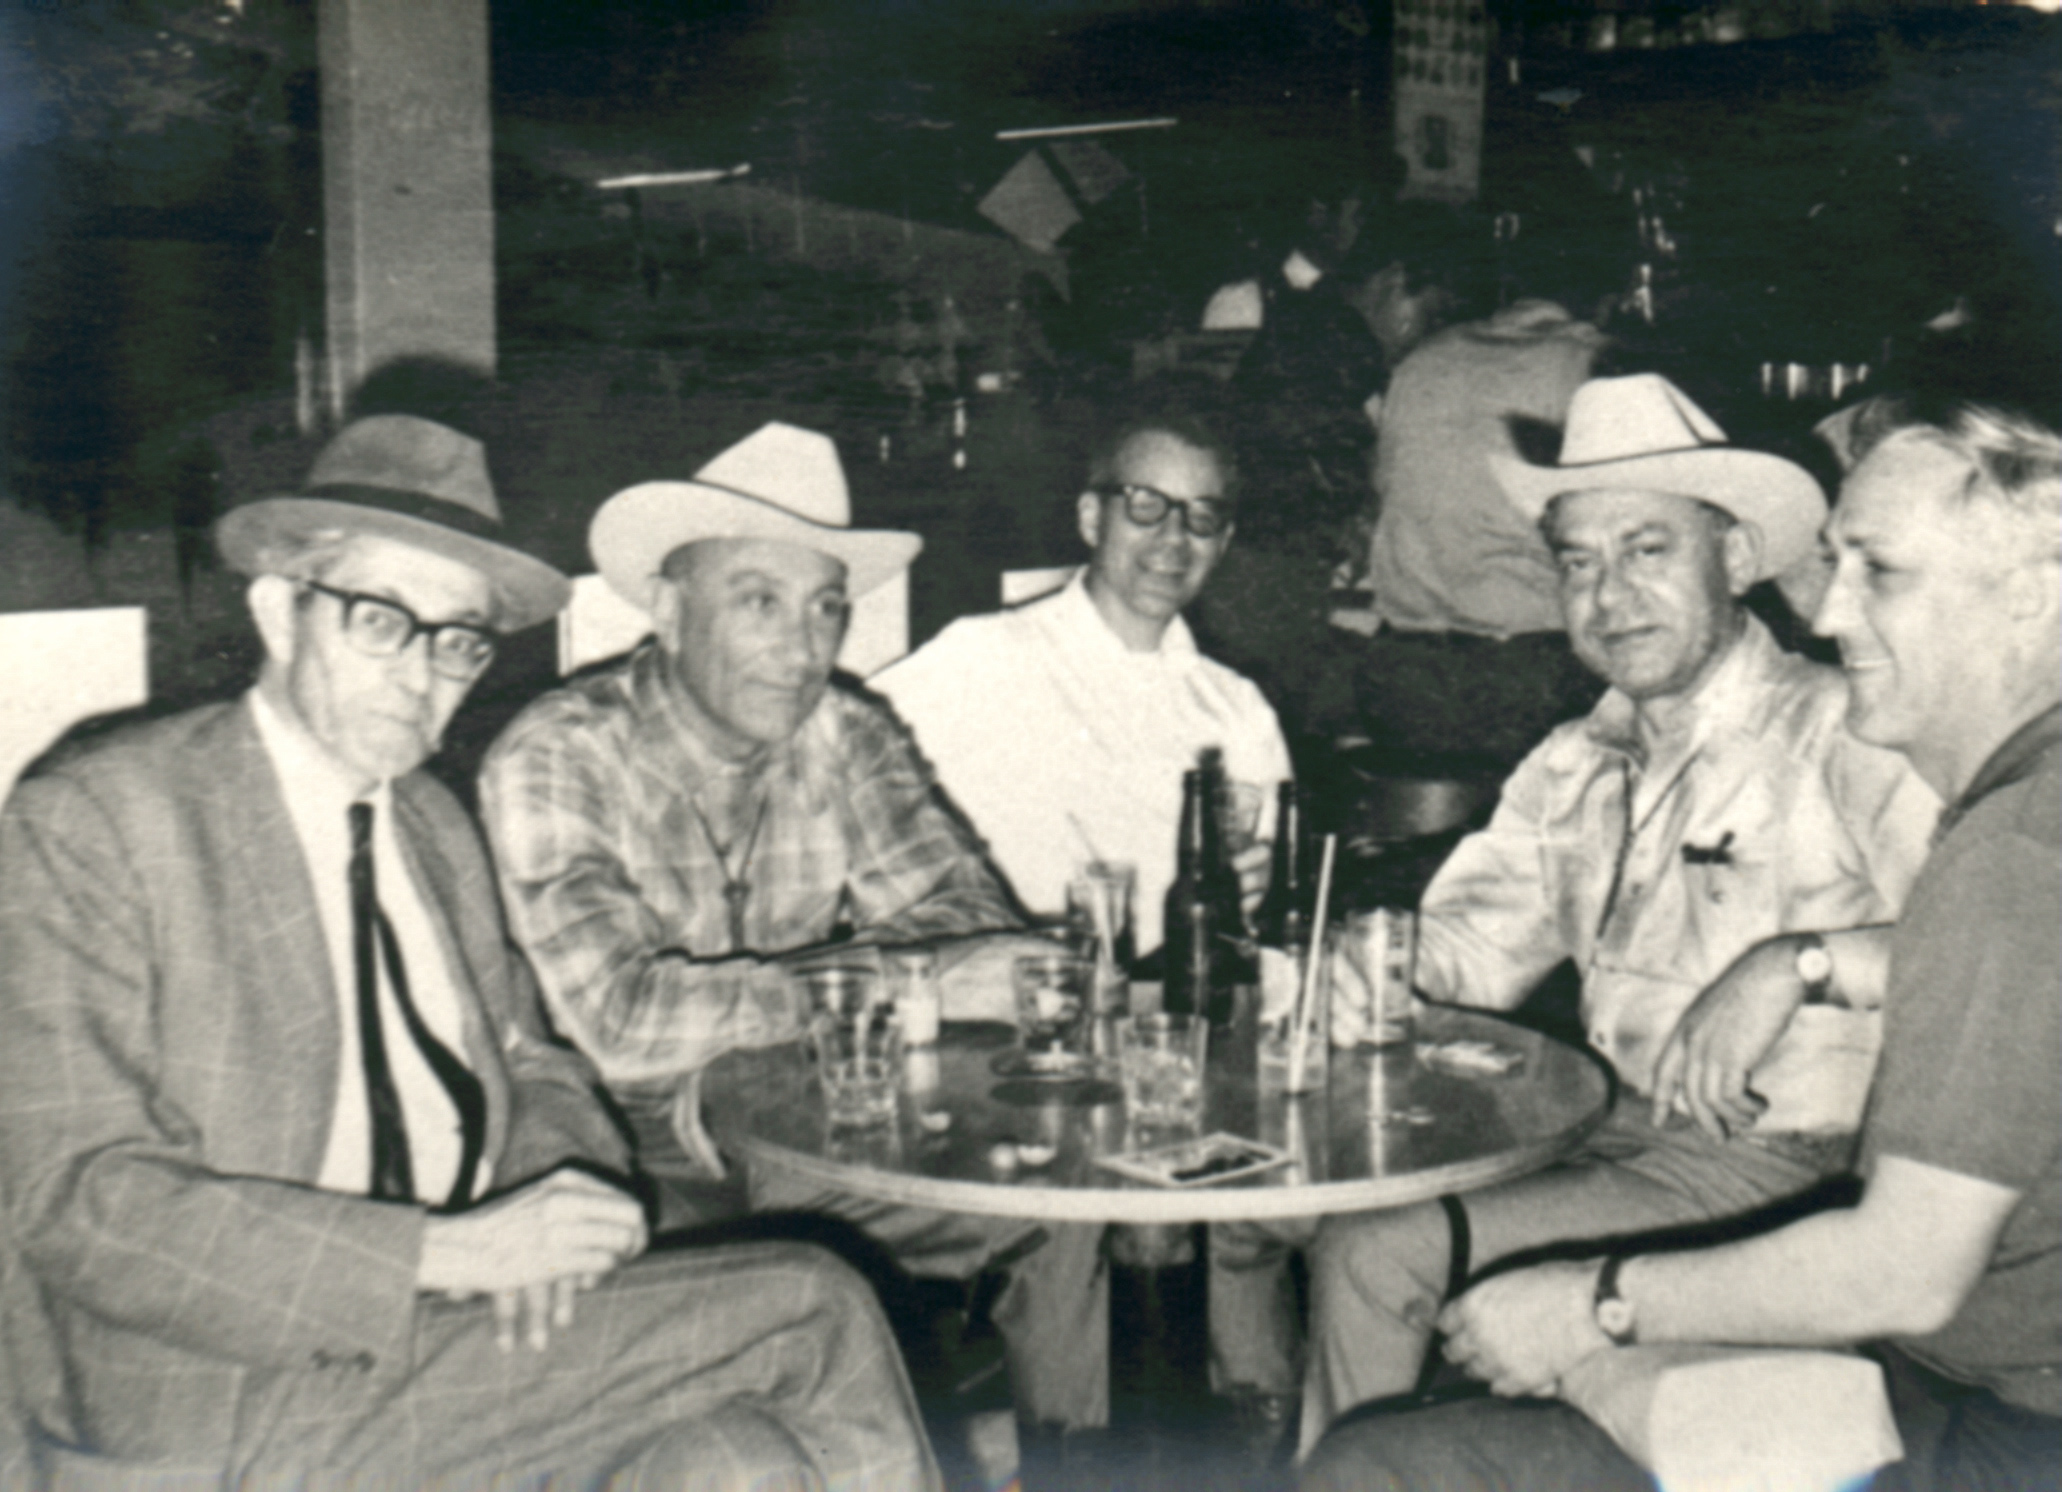 בתמונה יוסף לוי וראש המוסד מאיר עמית עם ג´ים אנגלטון וג´ון האדך אנשי ה - CIA, באחוזתו של ג´ים אנגלטון, בטויסון אריזונה, ארה"ב.